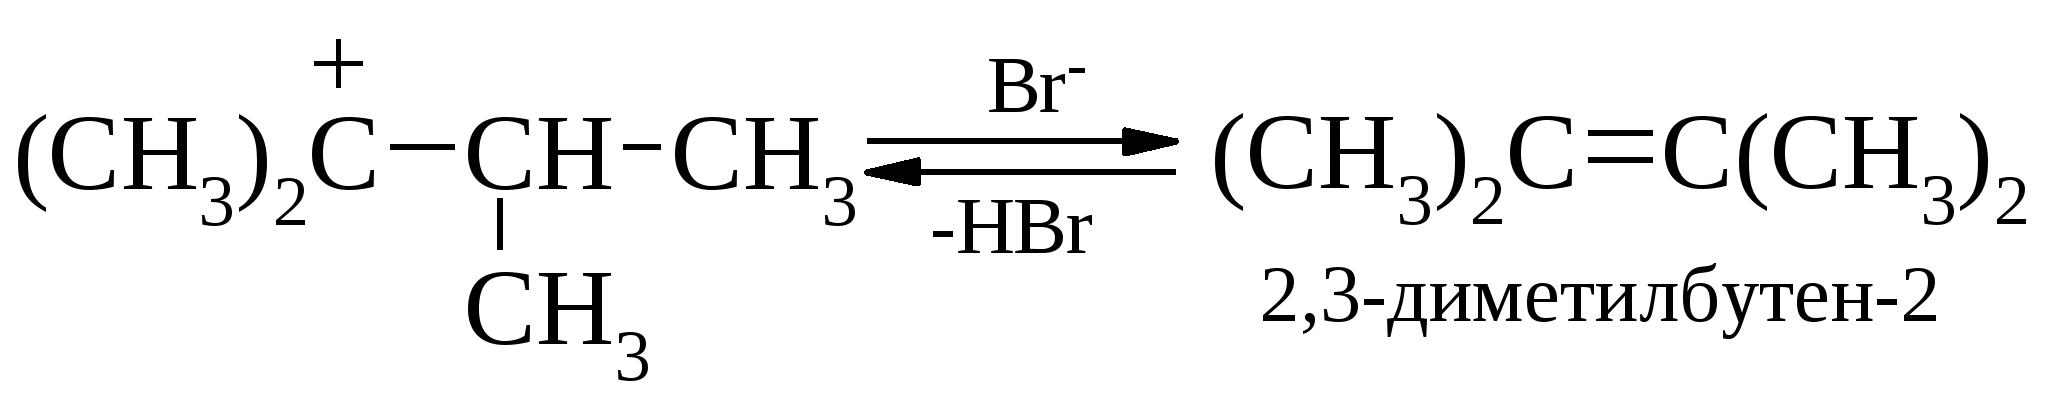 2 3 диметилбутен изомерия. 2 3 Диметилбутен 1 формула. Гидратация 2 3 диметилбутен 2. Полимеризация 2 3 диметилбутена 2. 2 3 Диметилбутен 1 и водород.